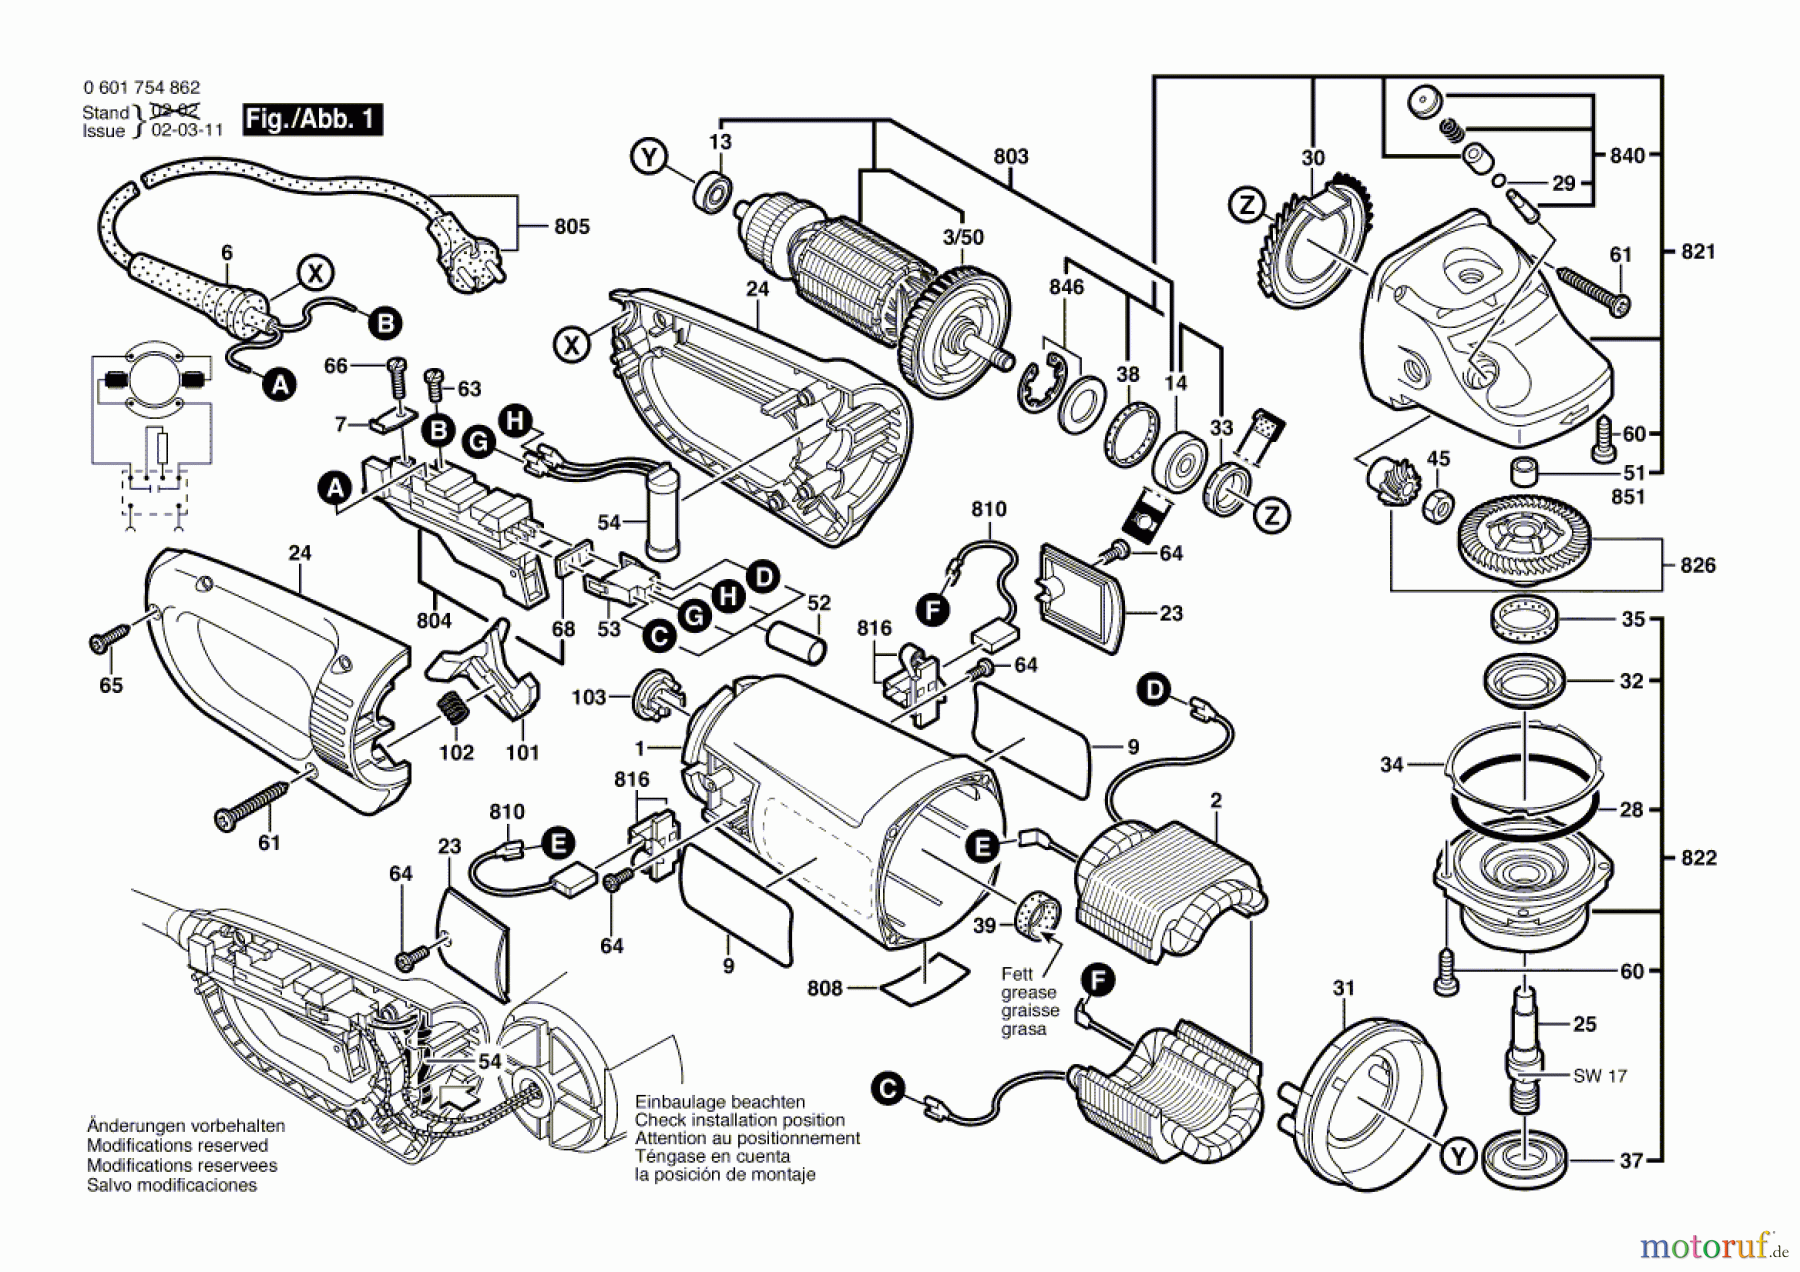  Bosch Werkzeug Winkelschleifer WKS 23-230 JS Seite 1